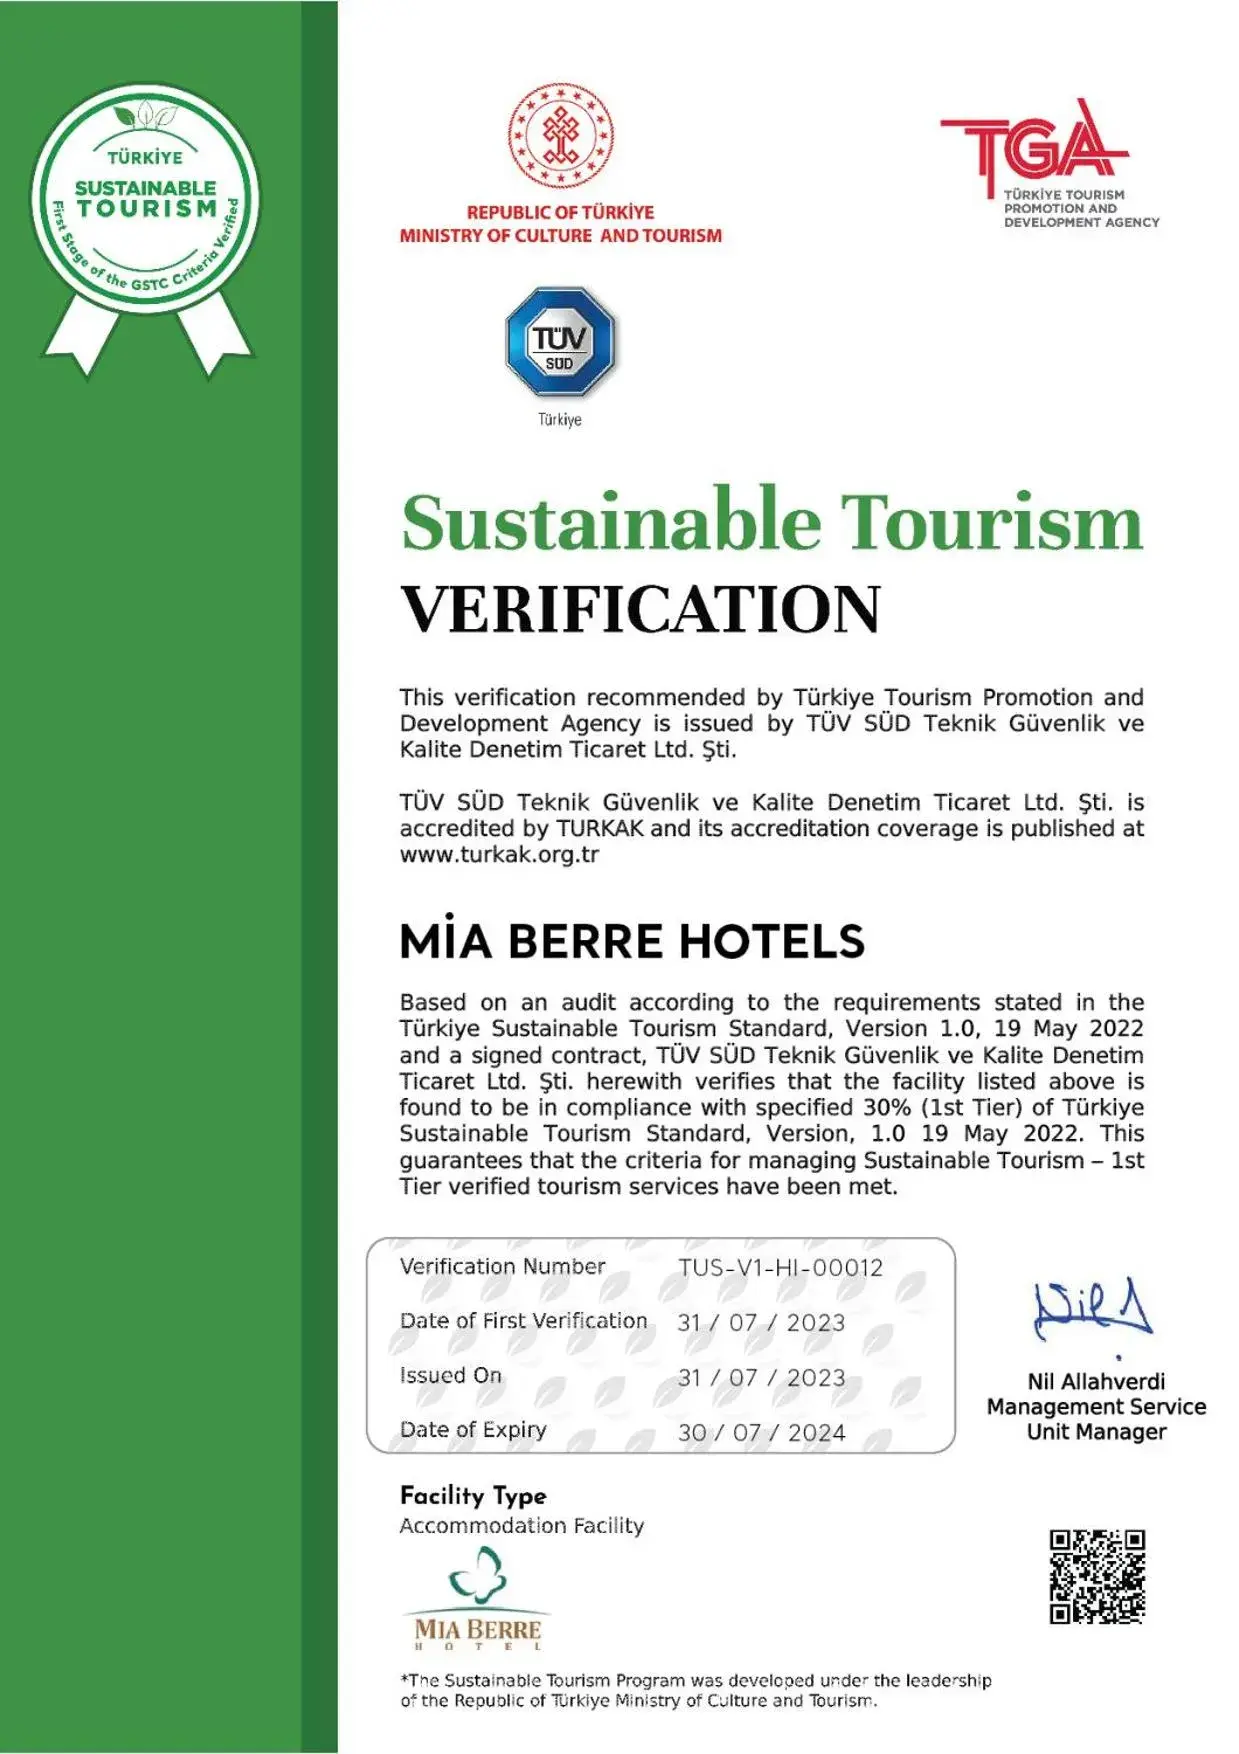 Certificate/Award in Mia Berre Hotels